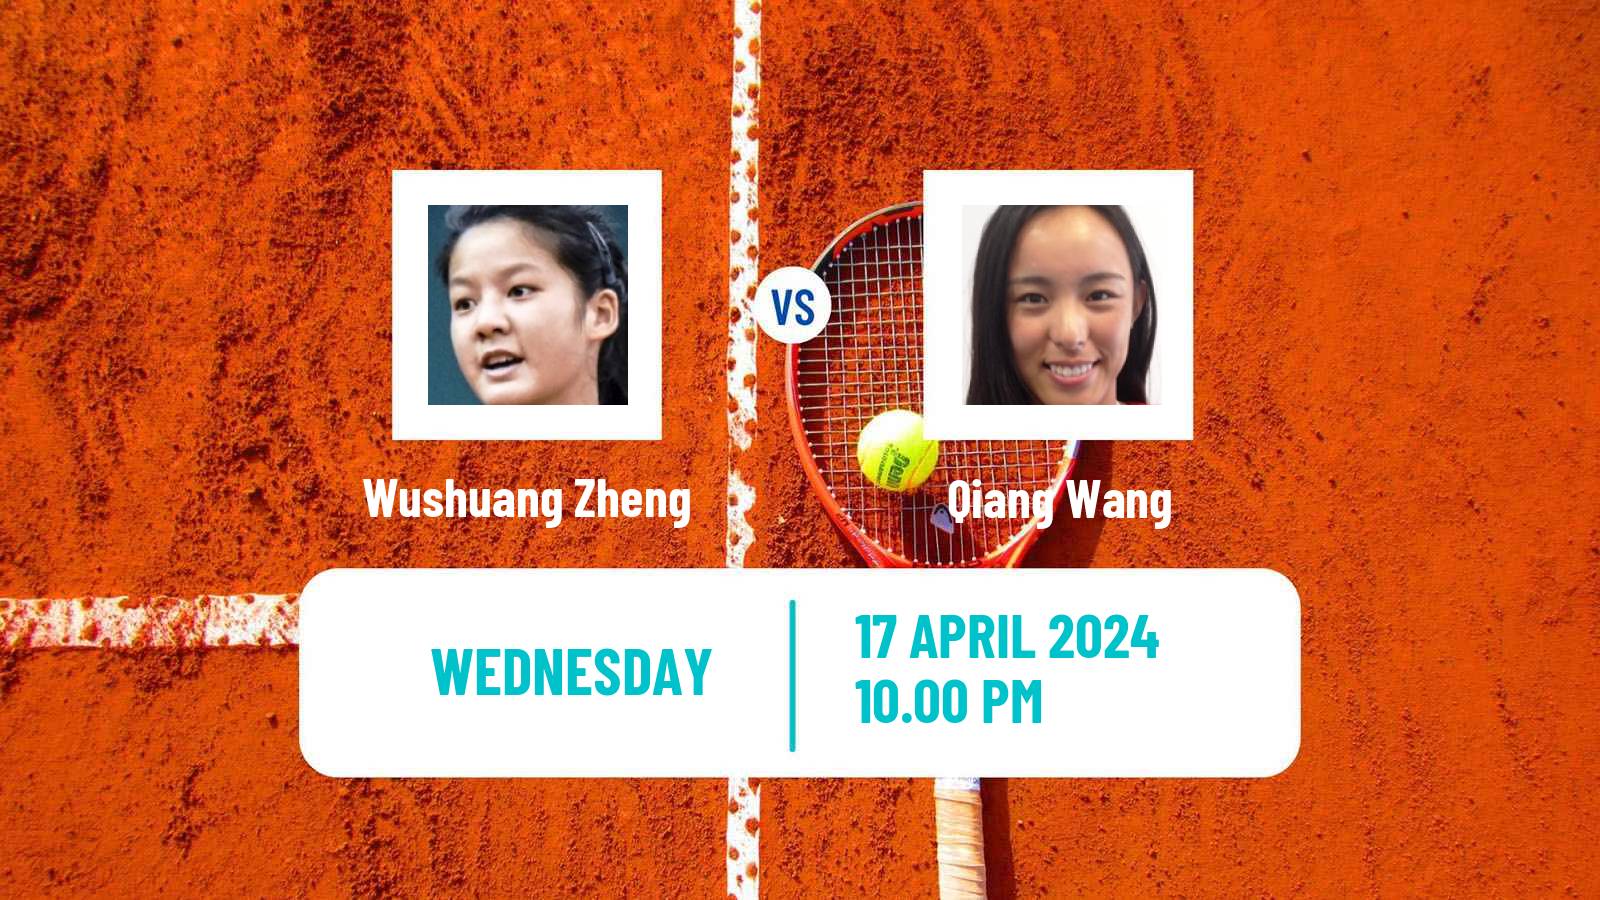 Tennis ITF W50 Shenzhen 2 Women Wushuang Zheng - Qiang Wang